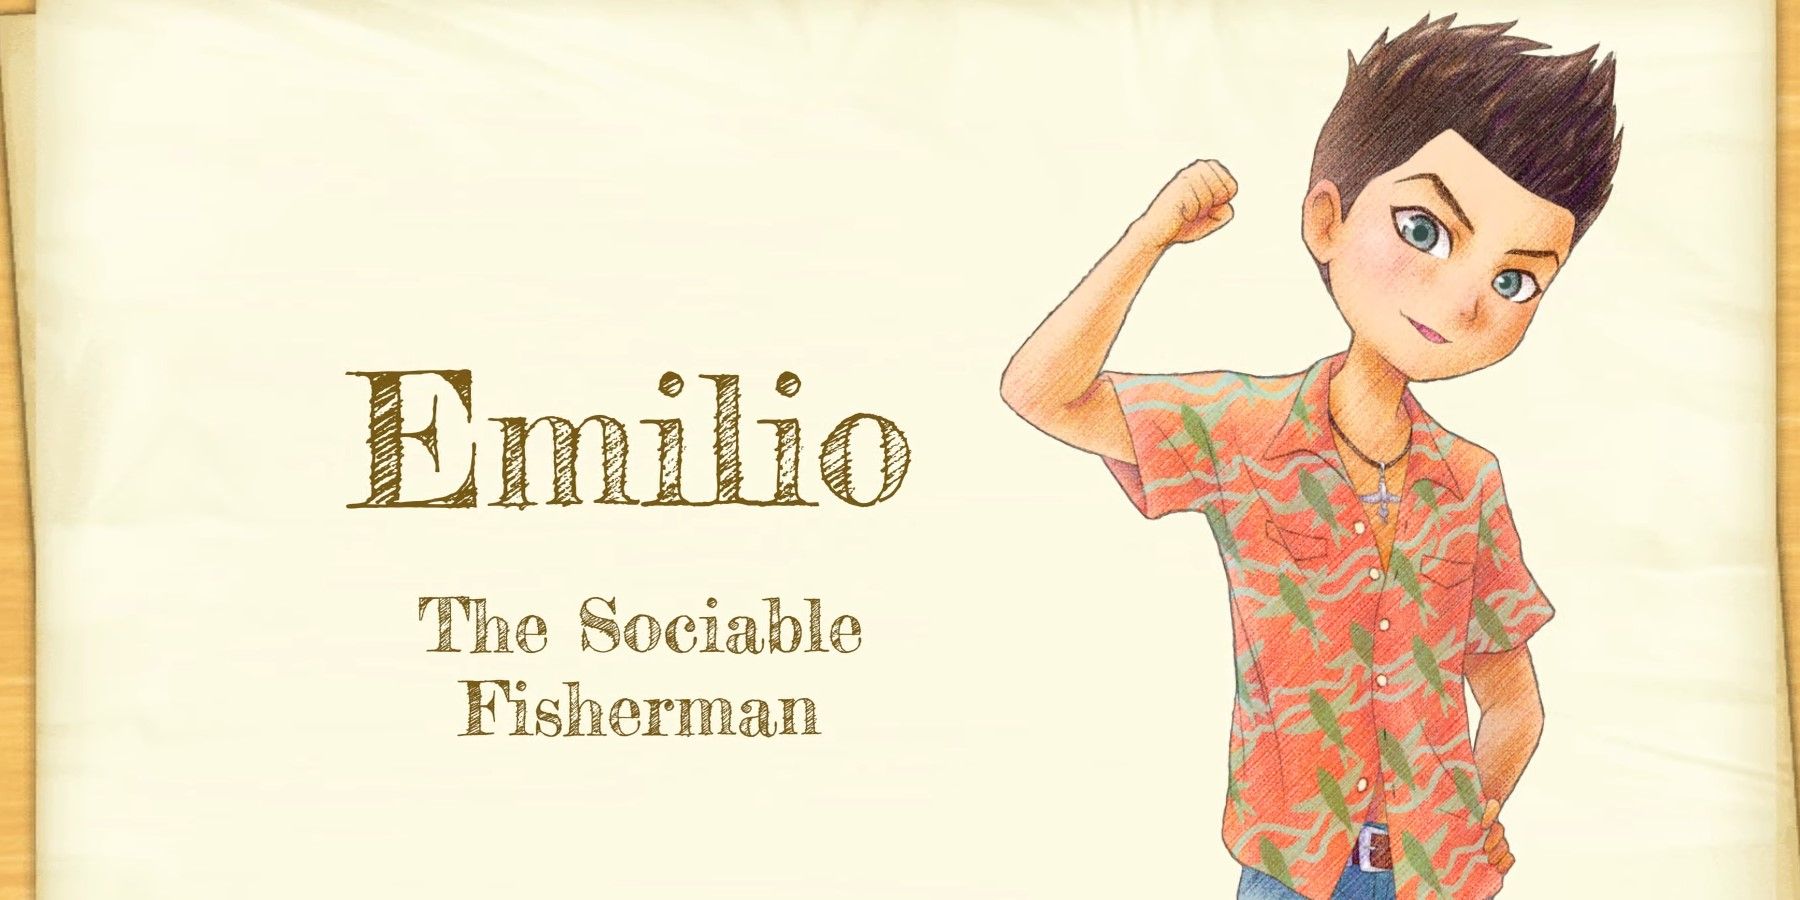 Emilio